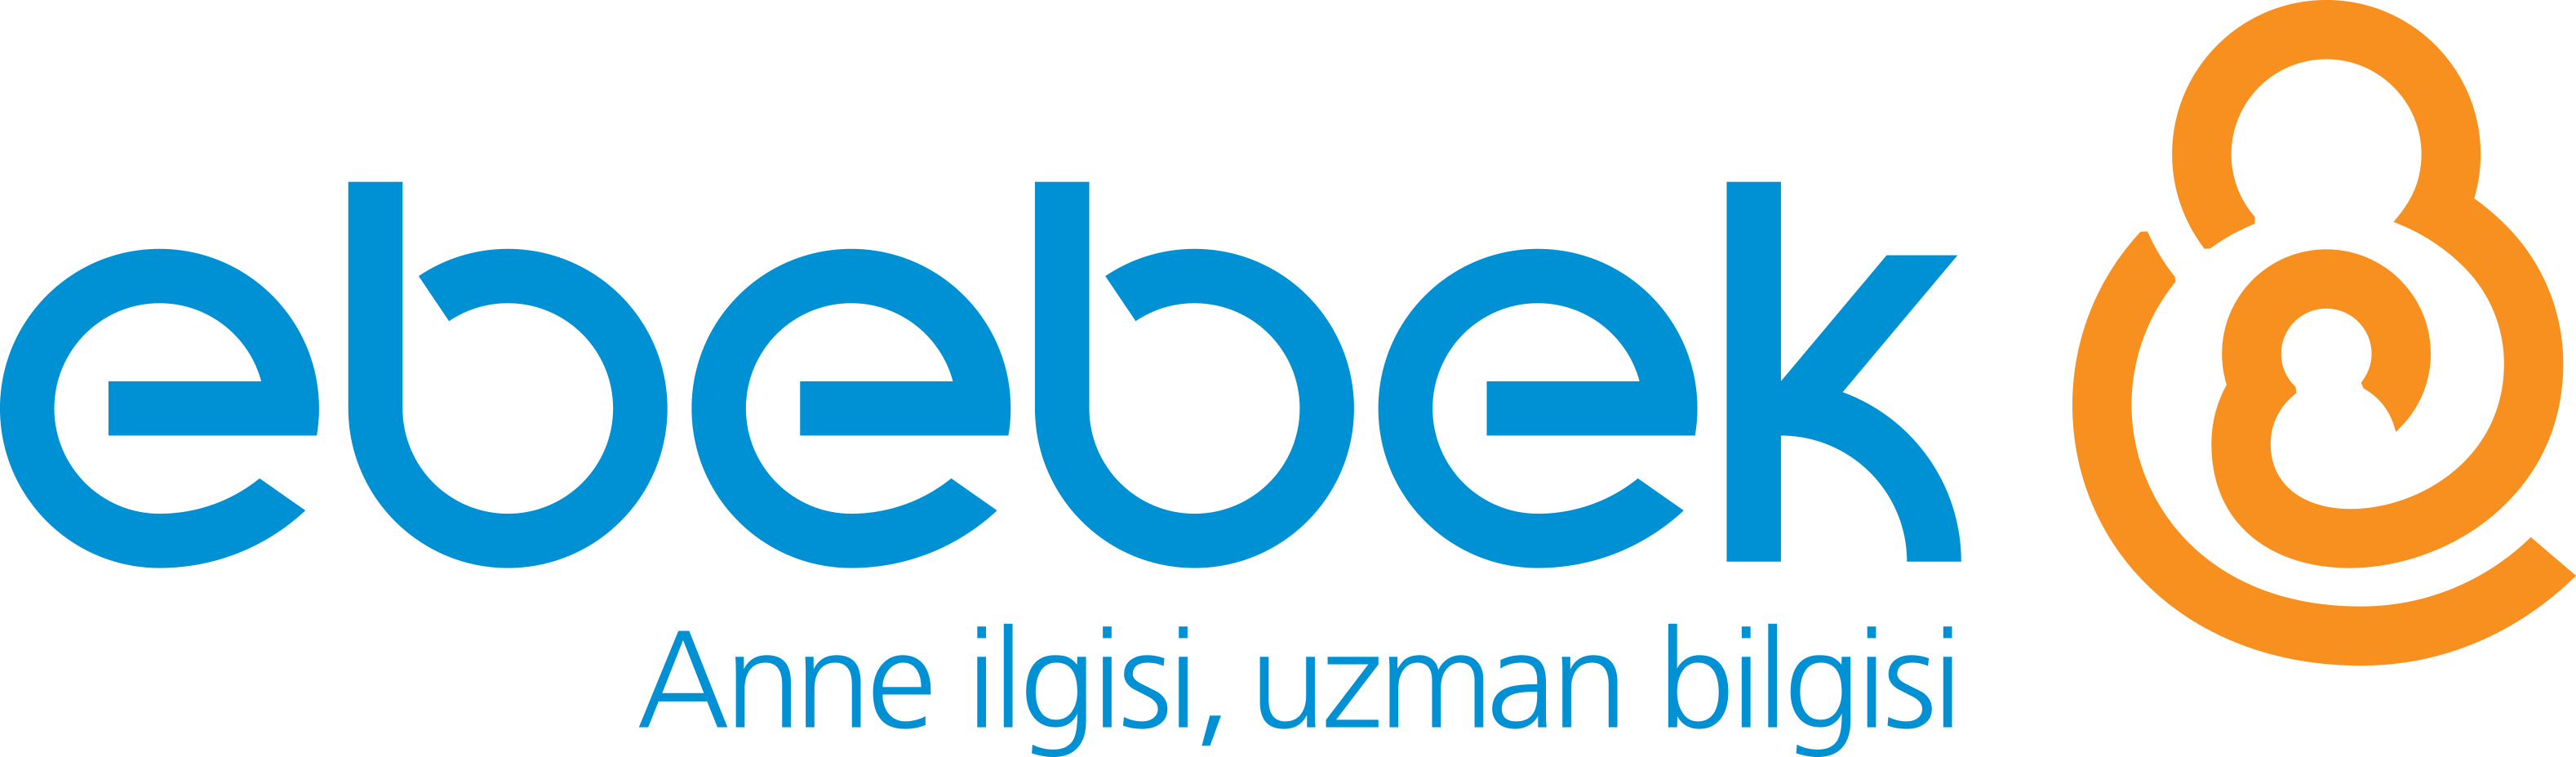 E-BEBEK